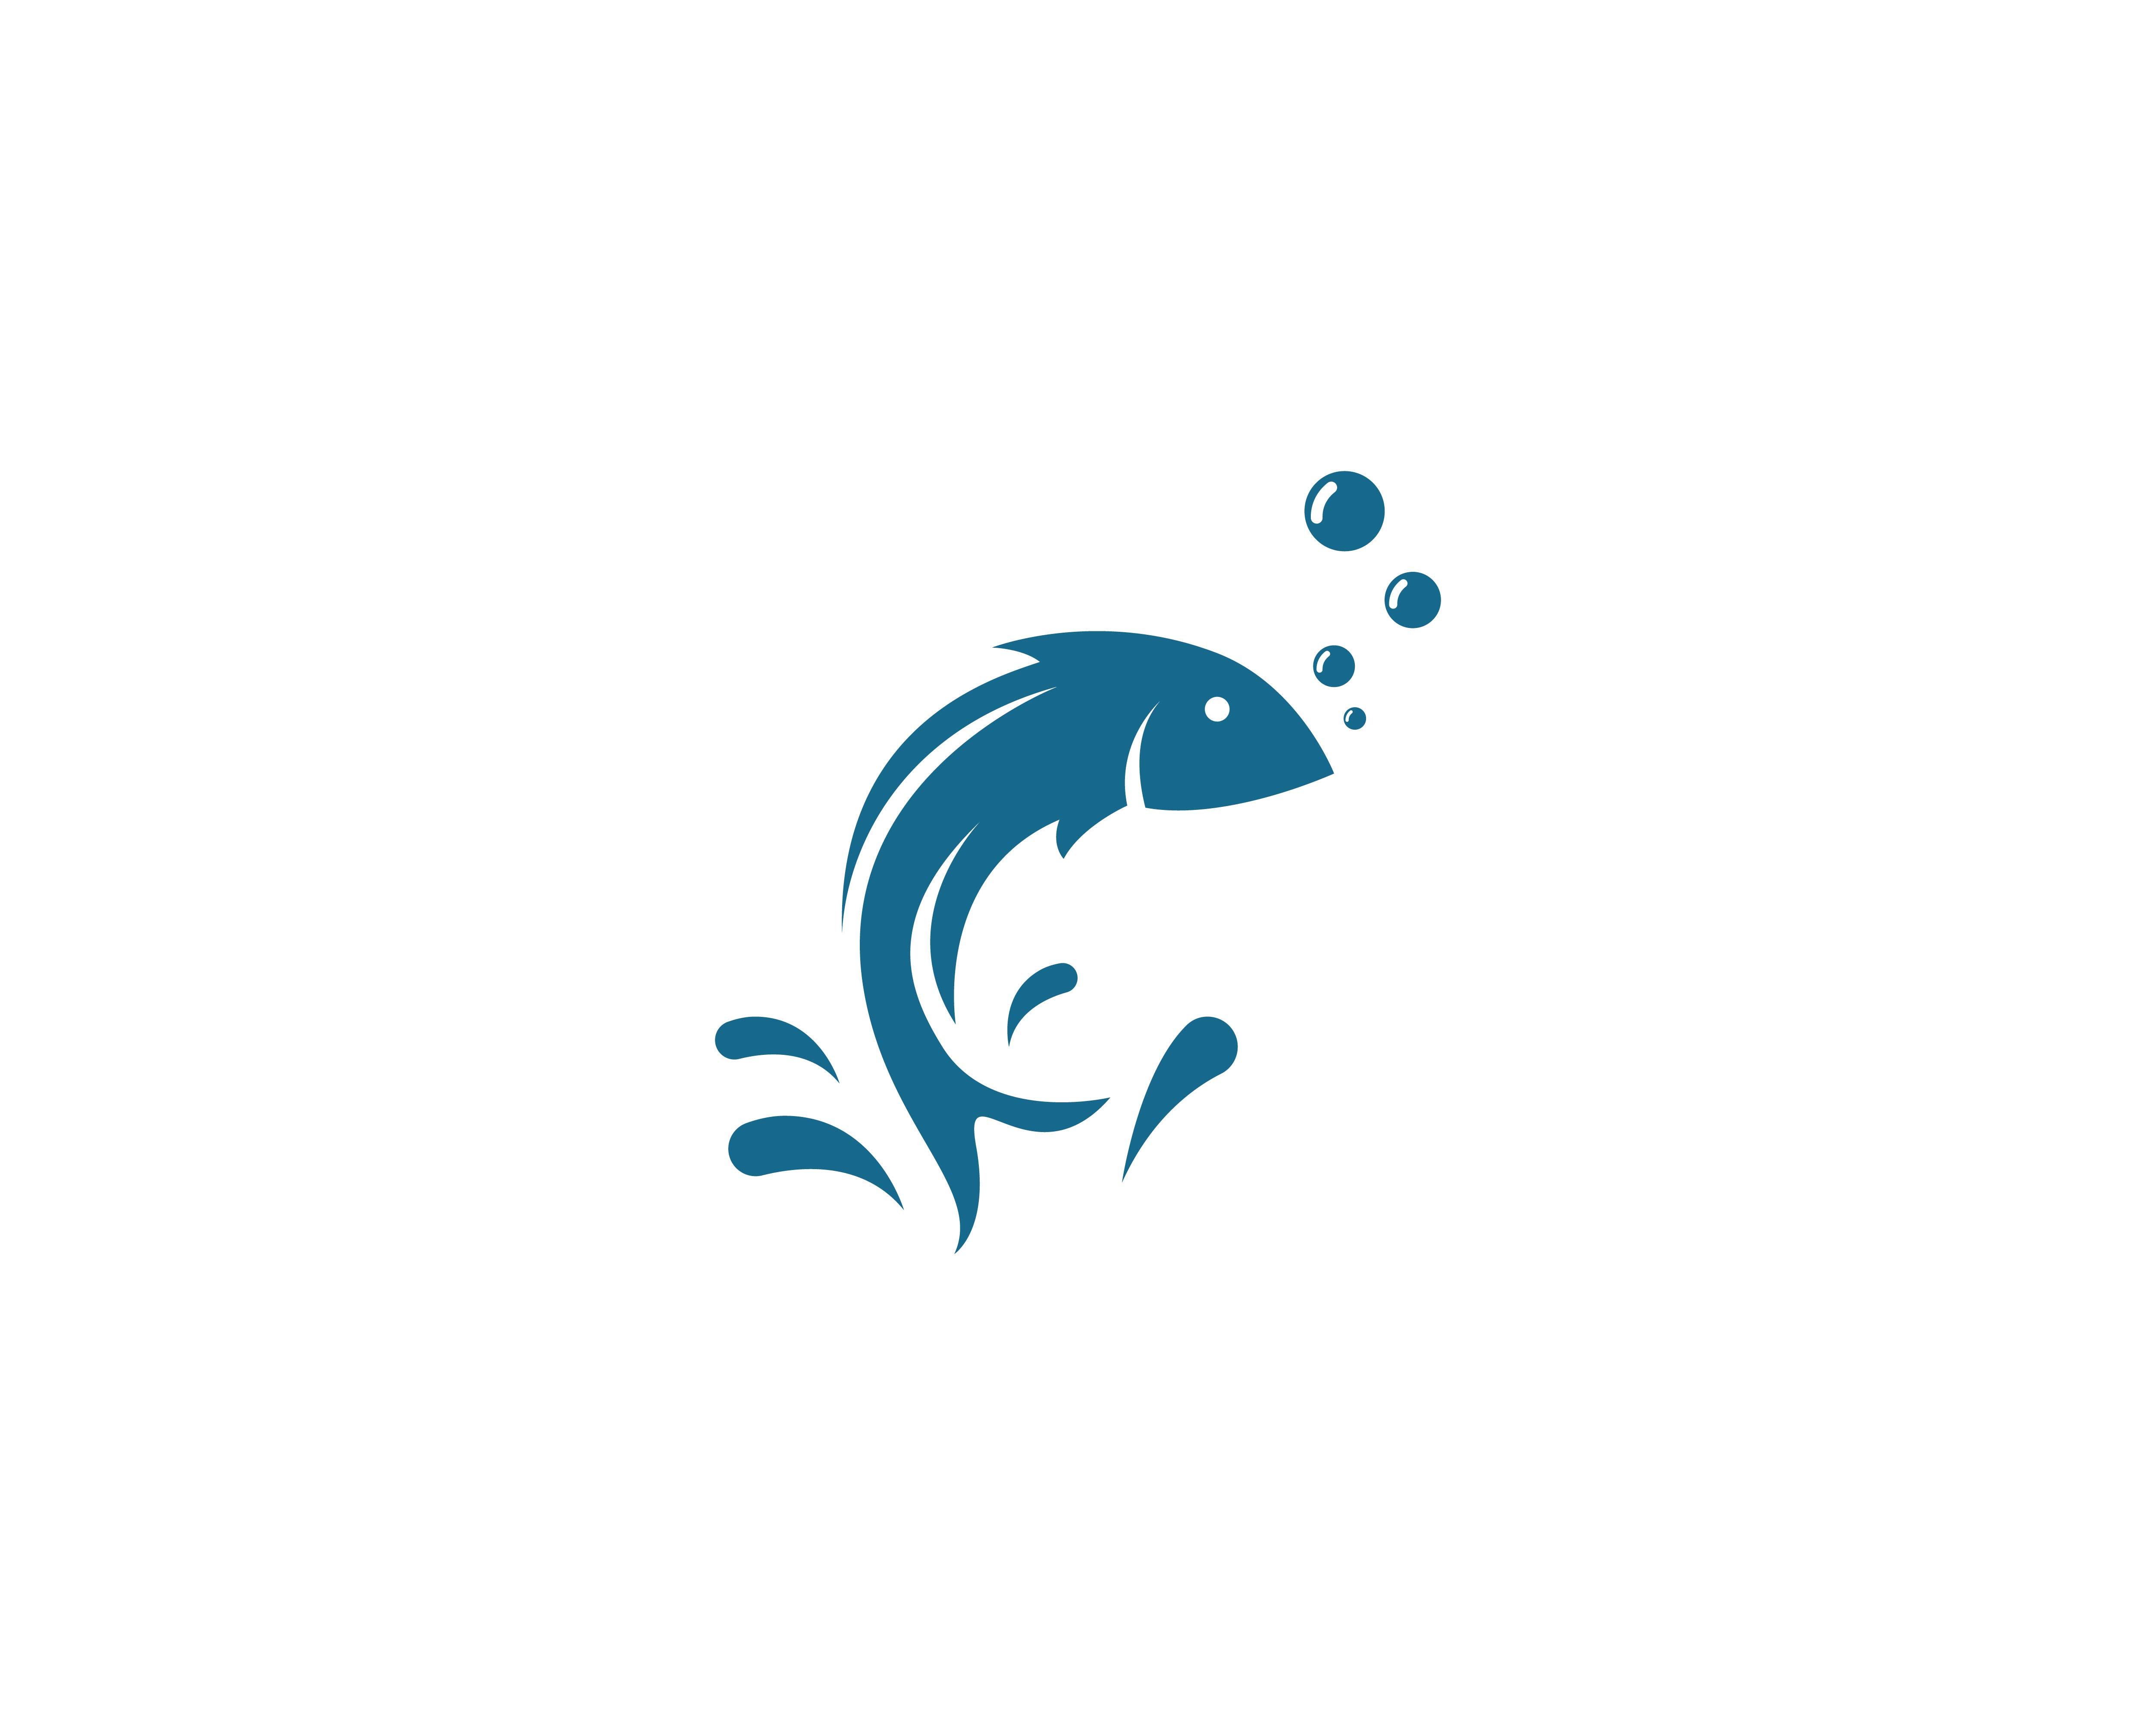 Fish logo template Download Free Vectors, Clipart